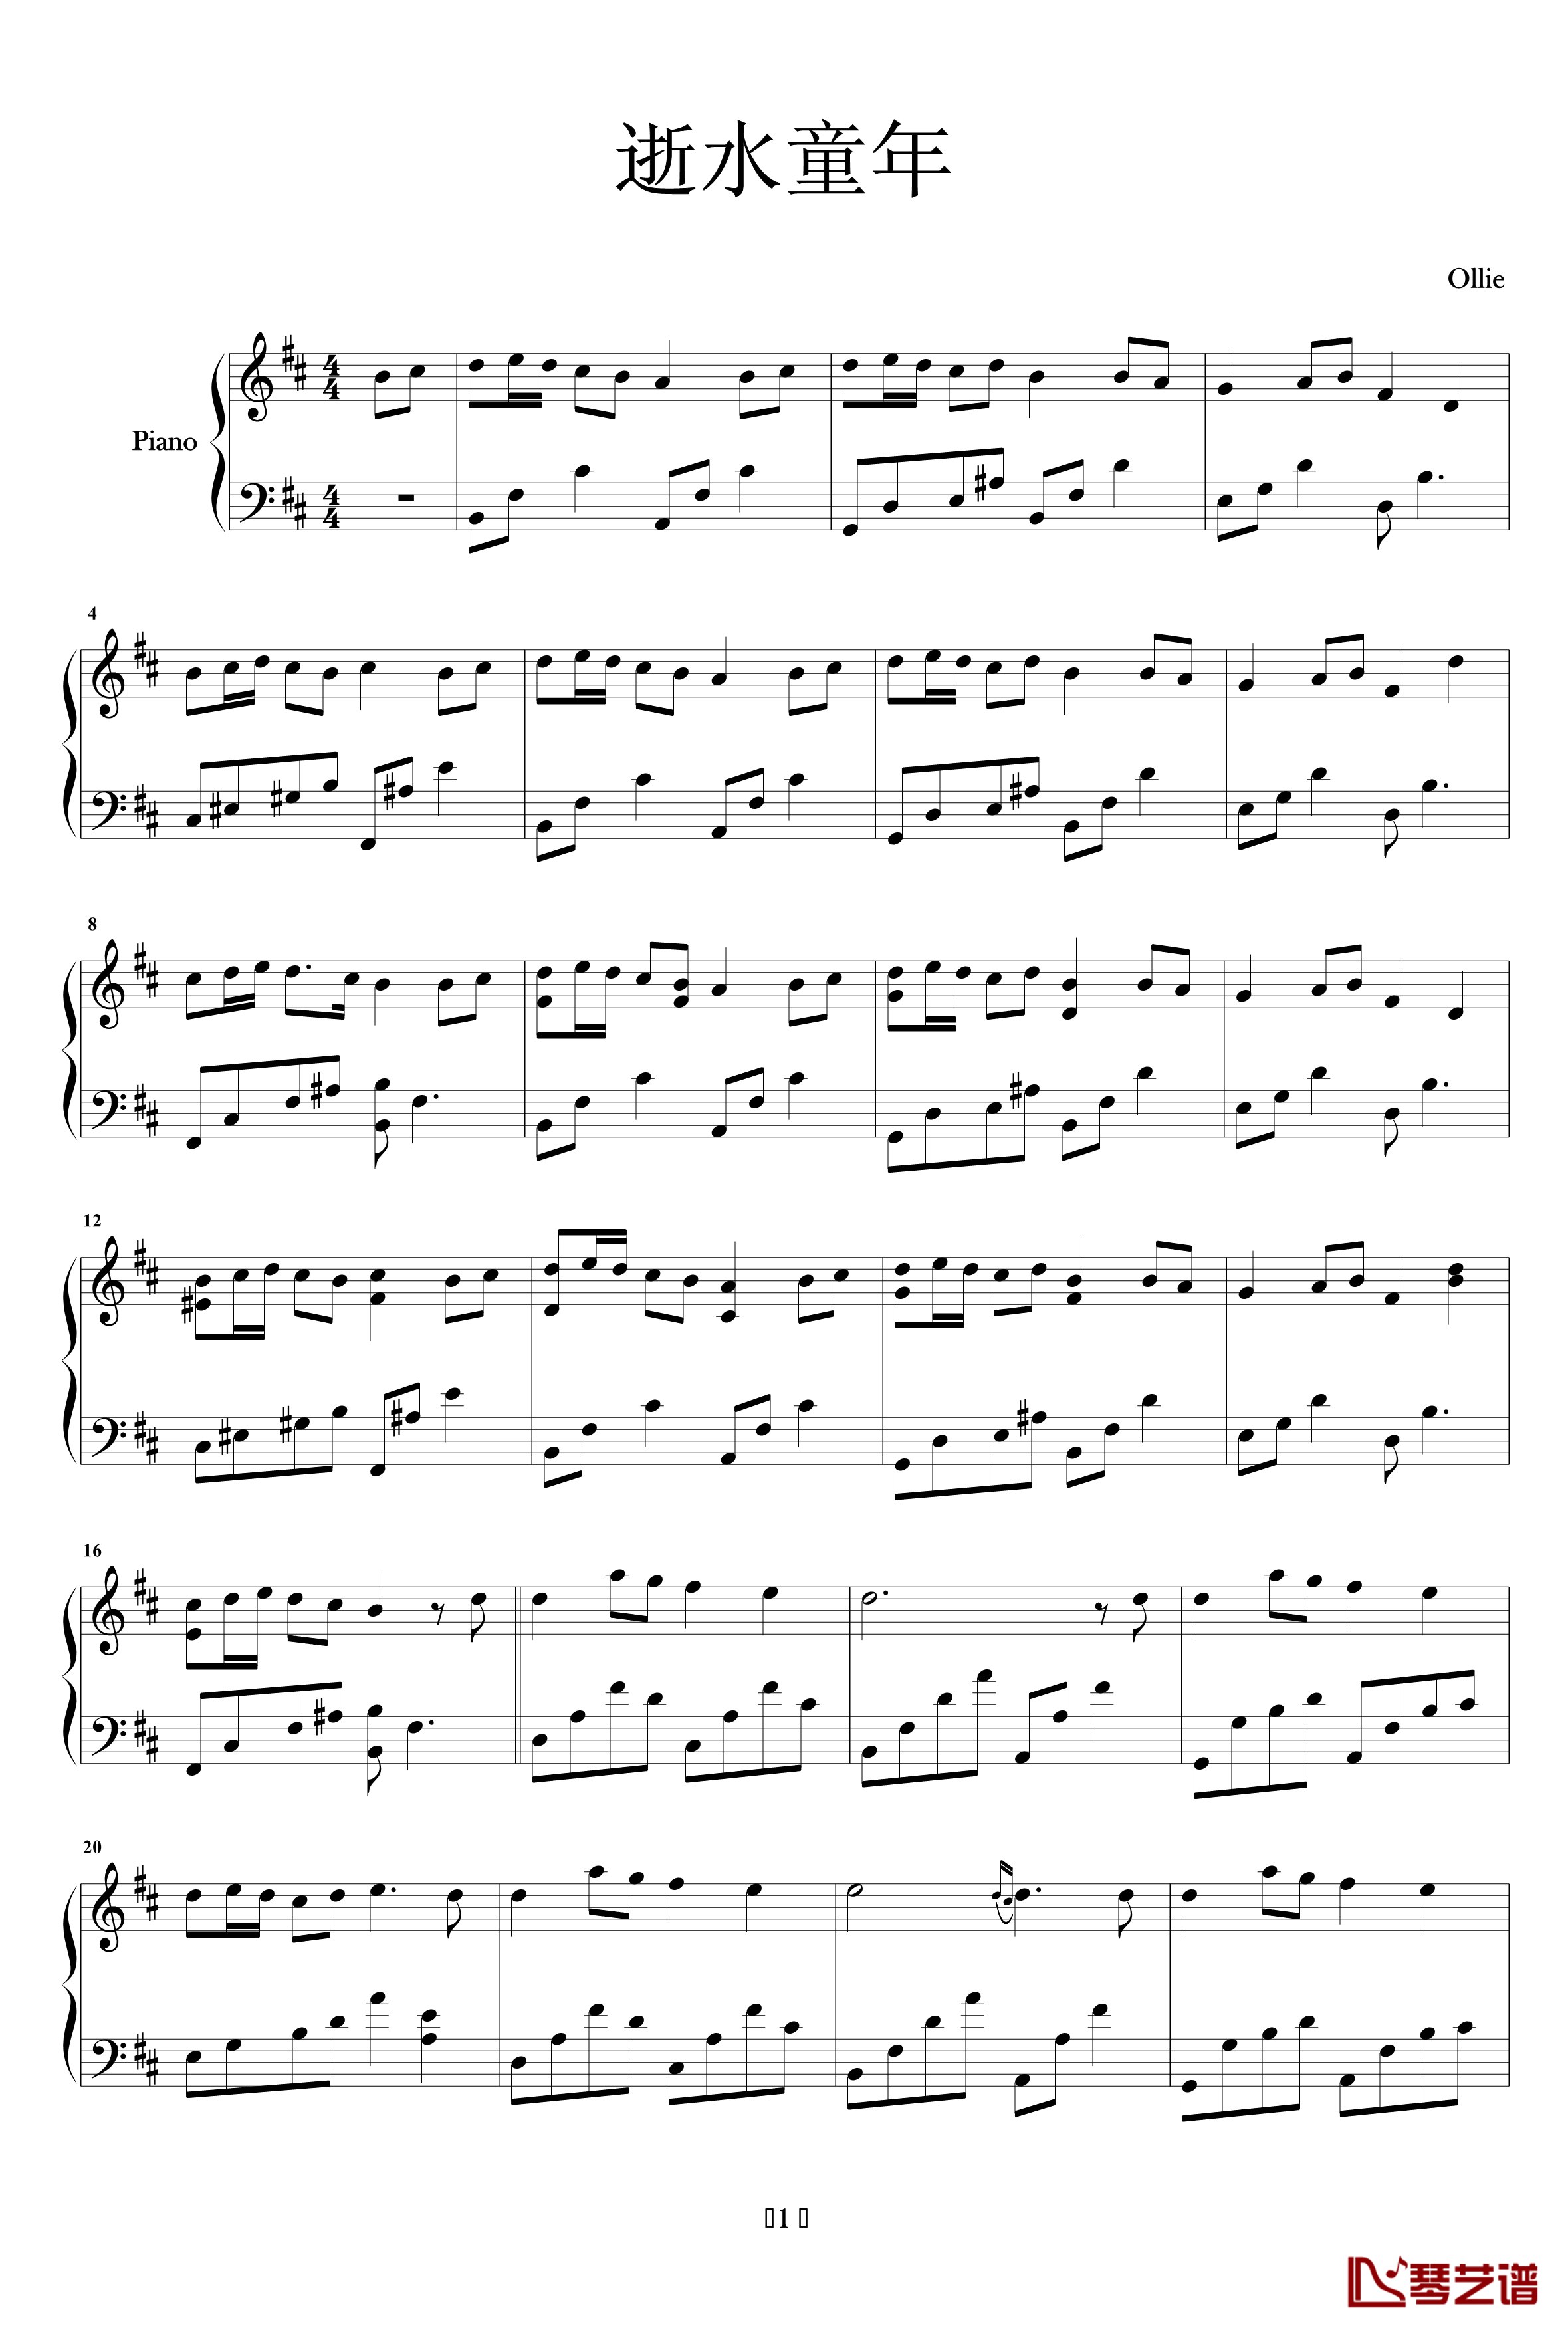 逝水童年钢琴谱-O.H.1